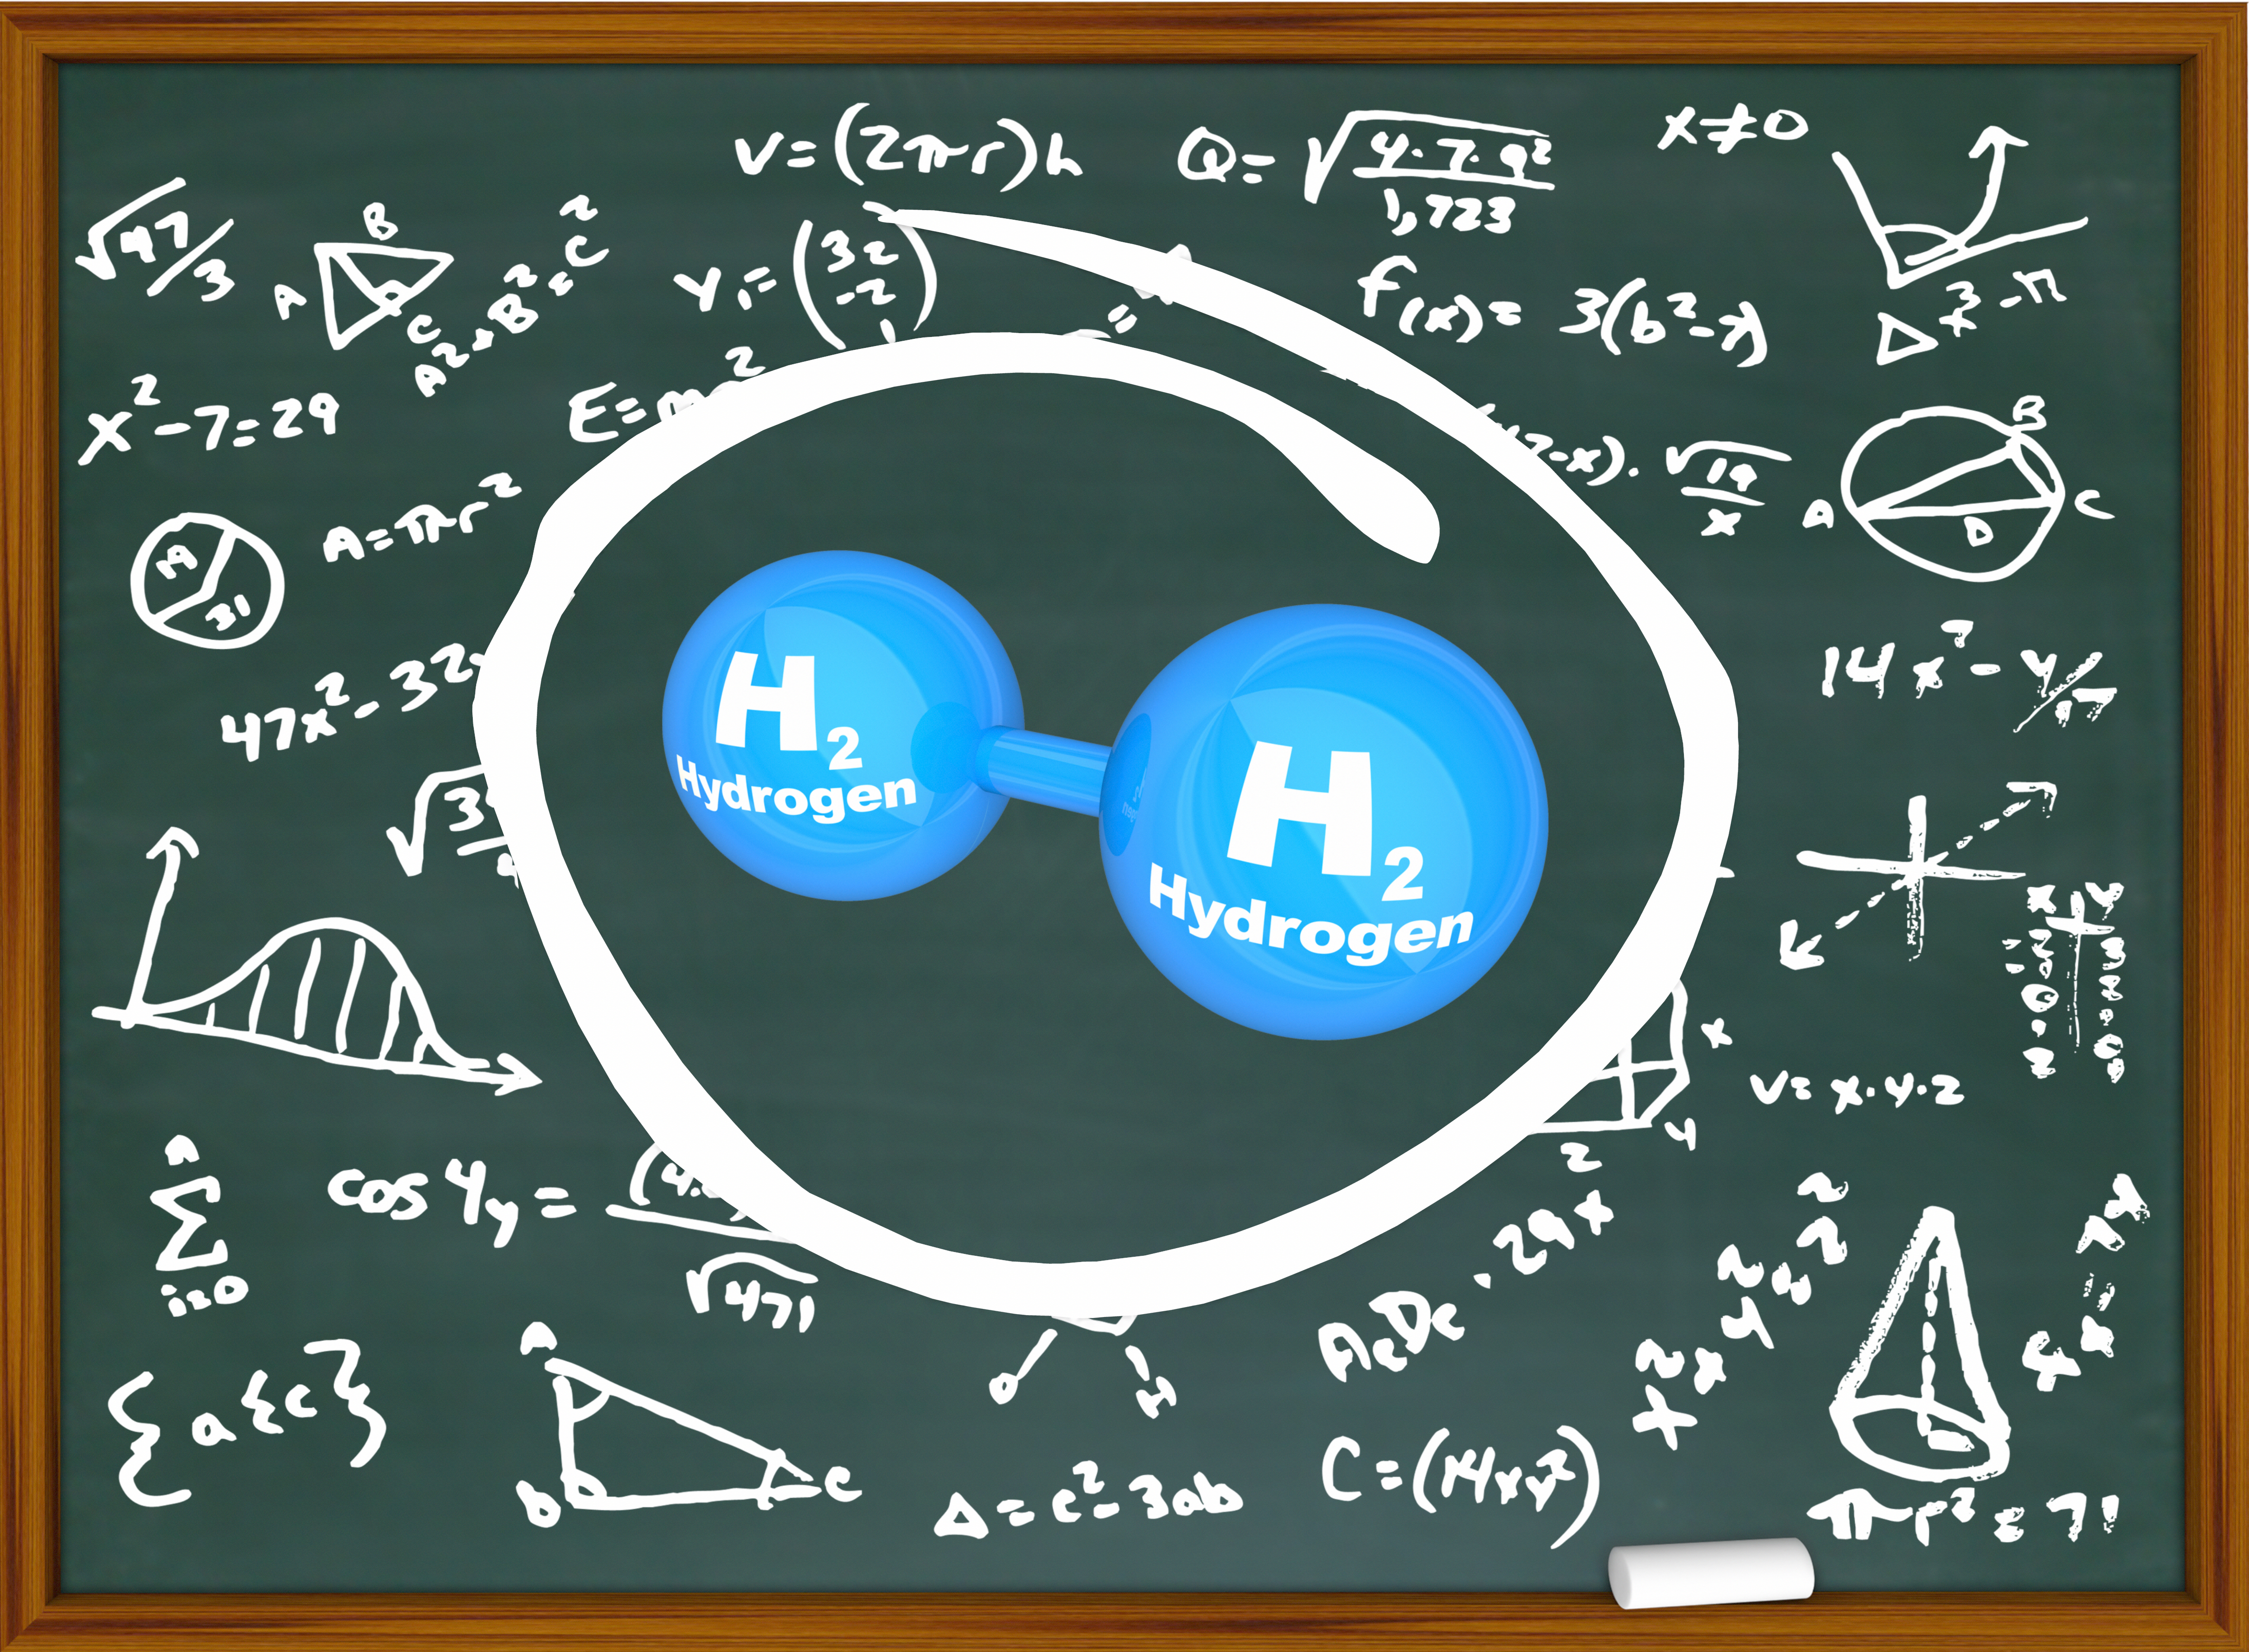 Die Illustration zeigt eine Schultafel mit dem Symbol für Wasserstoff